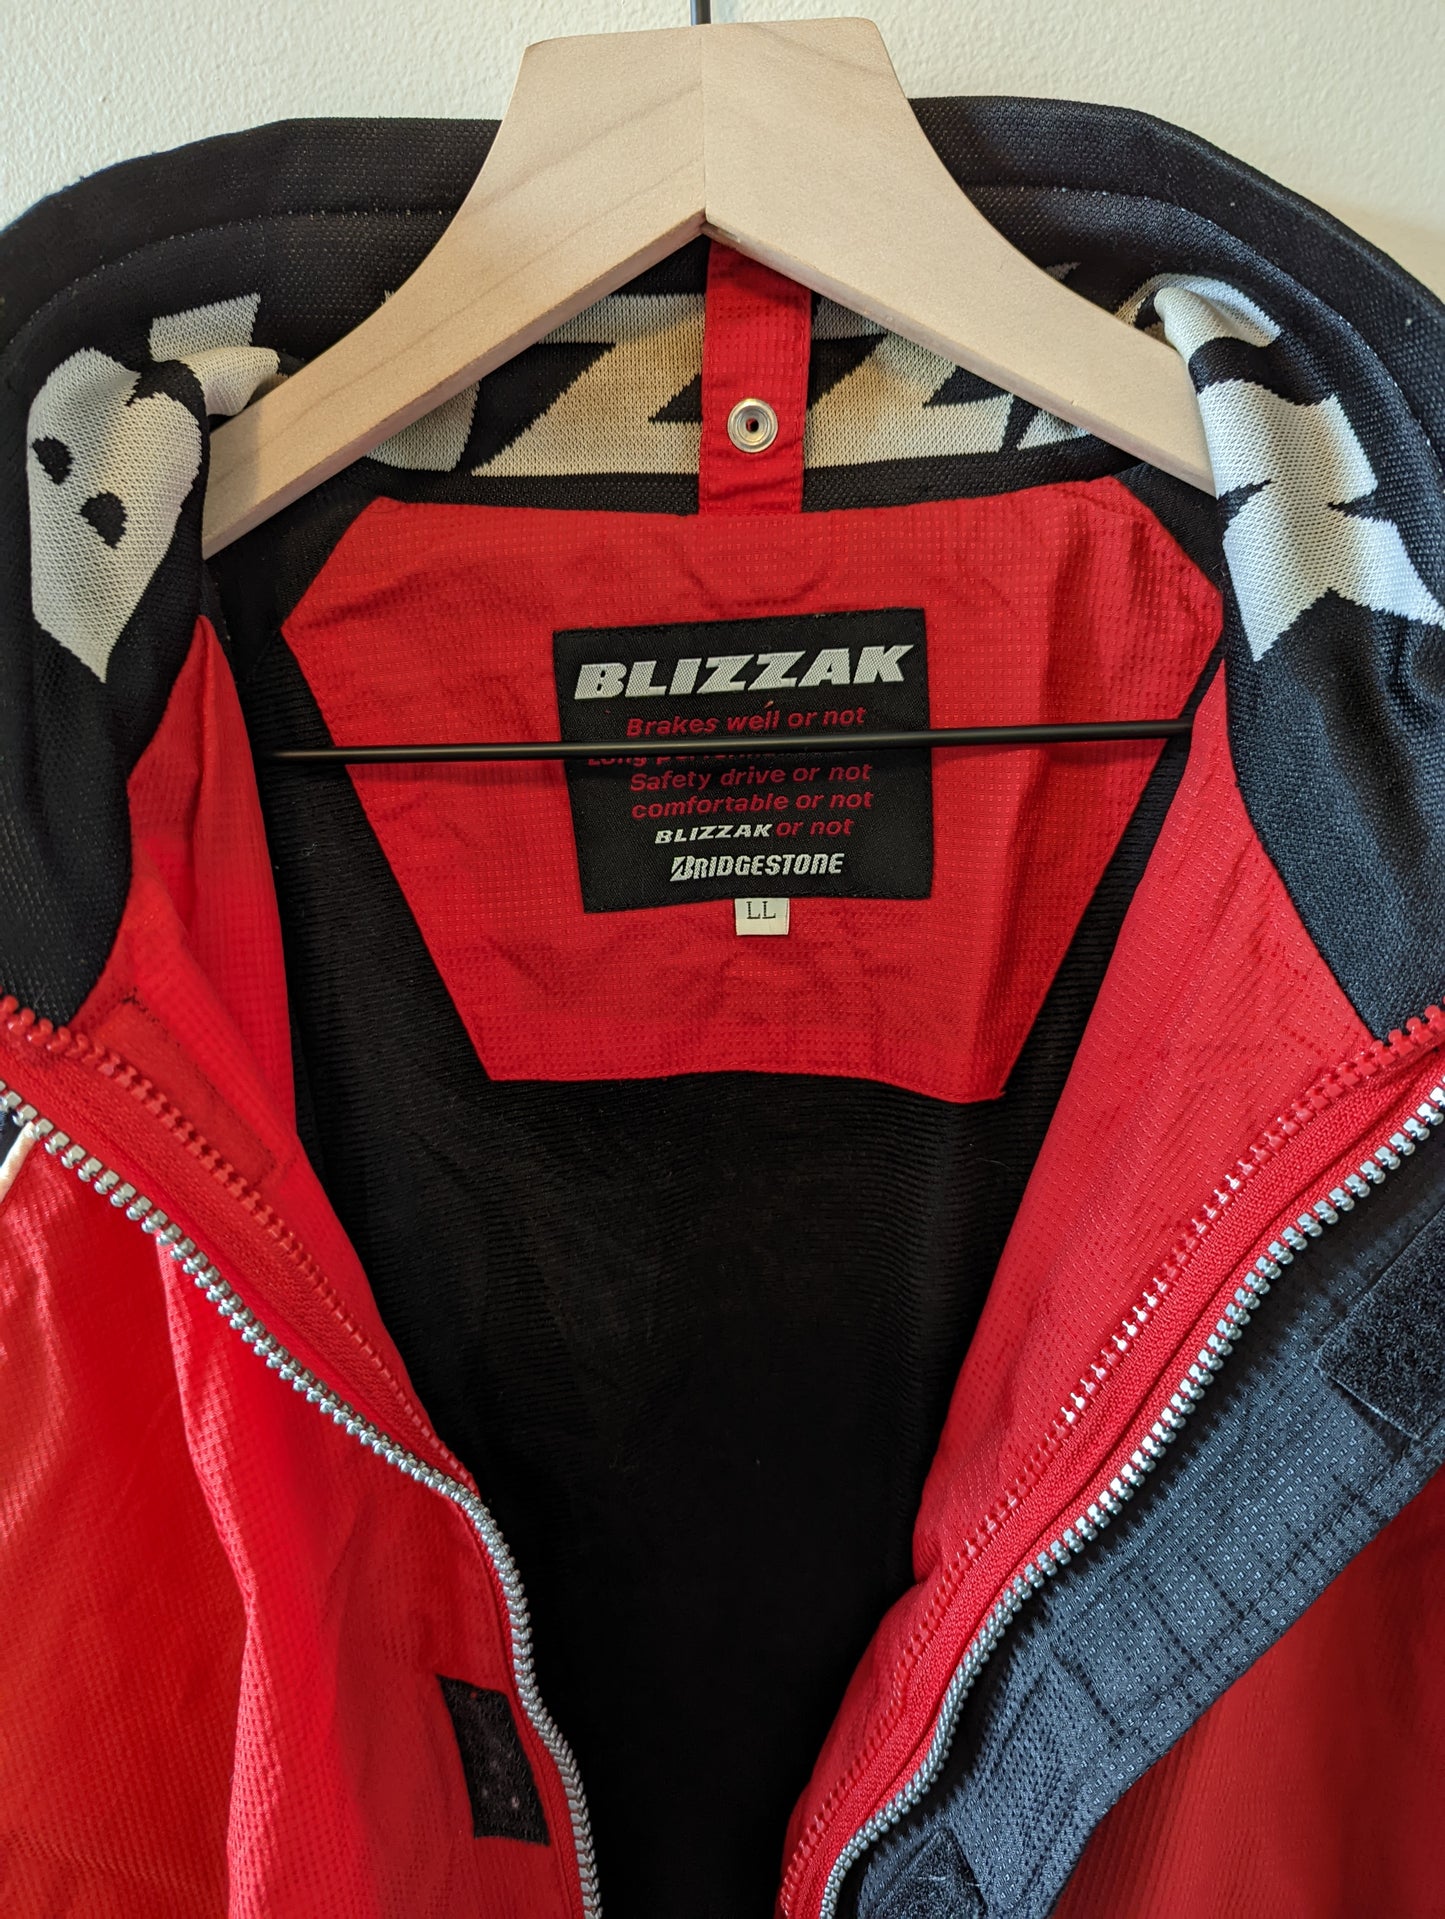 Bridgestone Blizzak Jacket Size: US XL